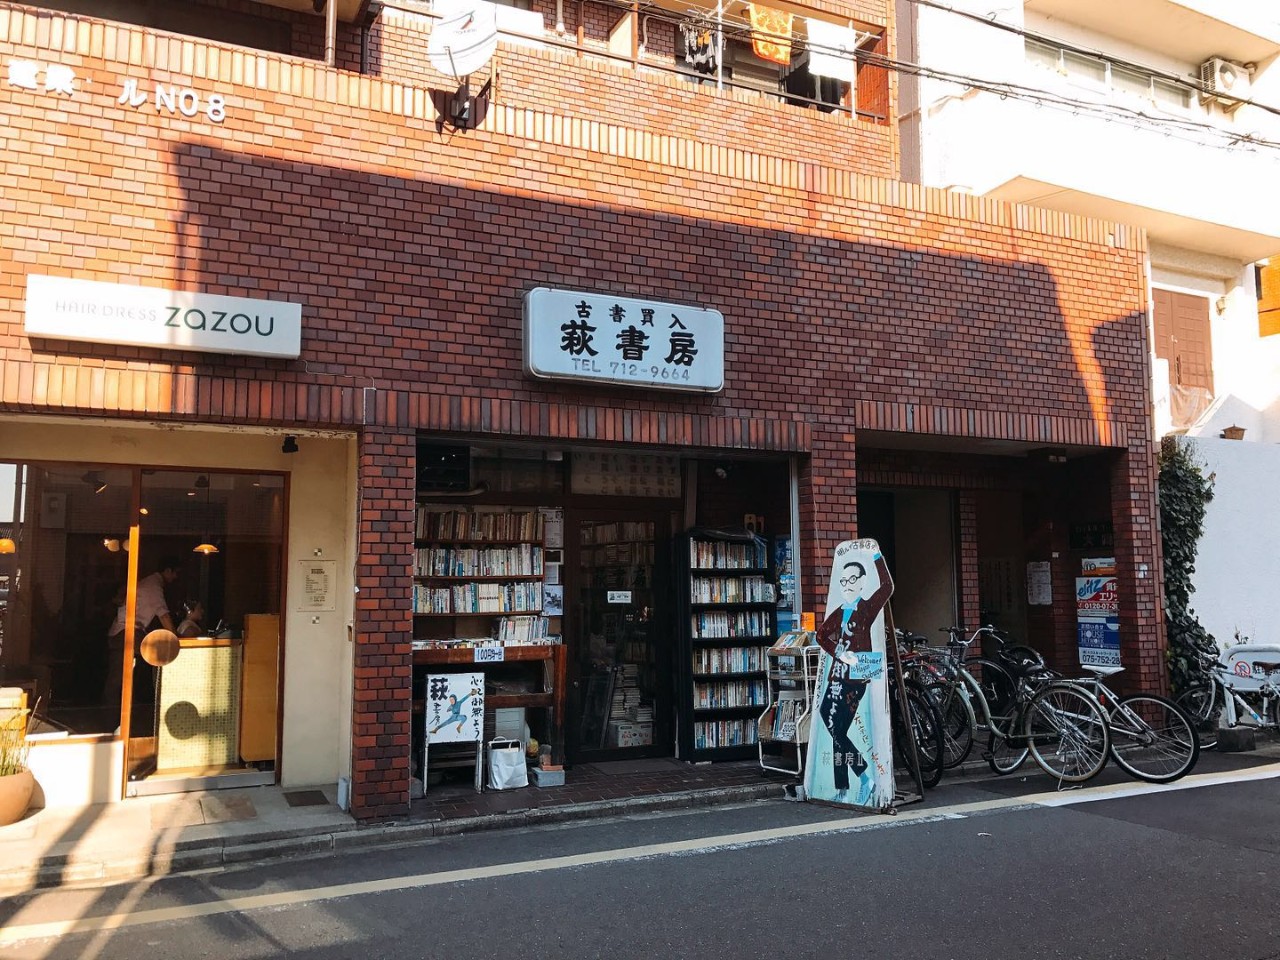 新潮?老派?文艺?个性?探访日本京都的四家独立书店